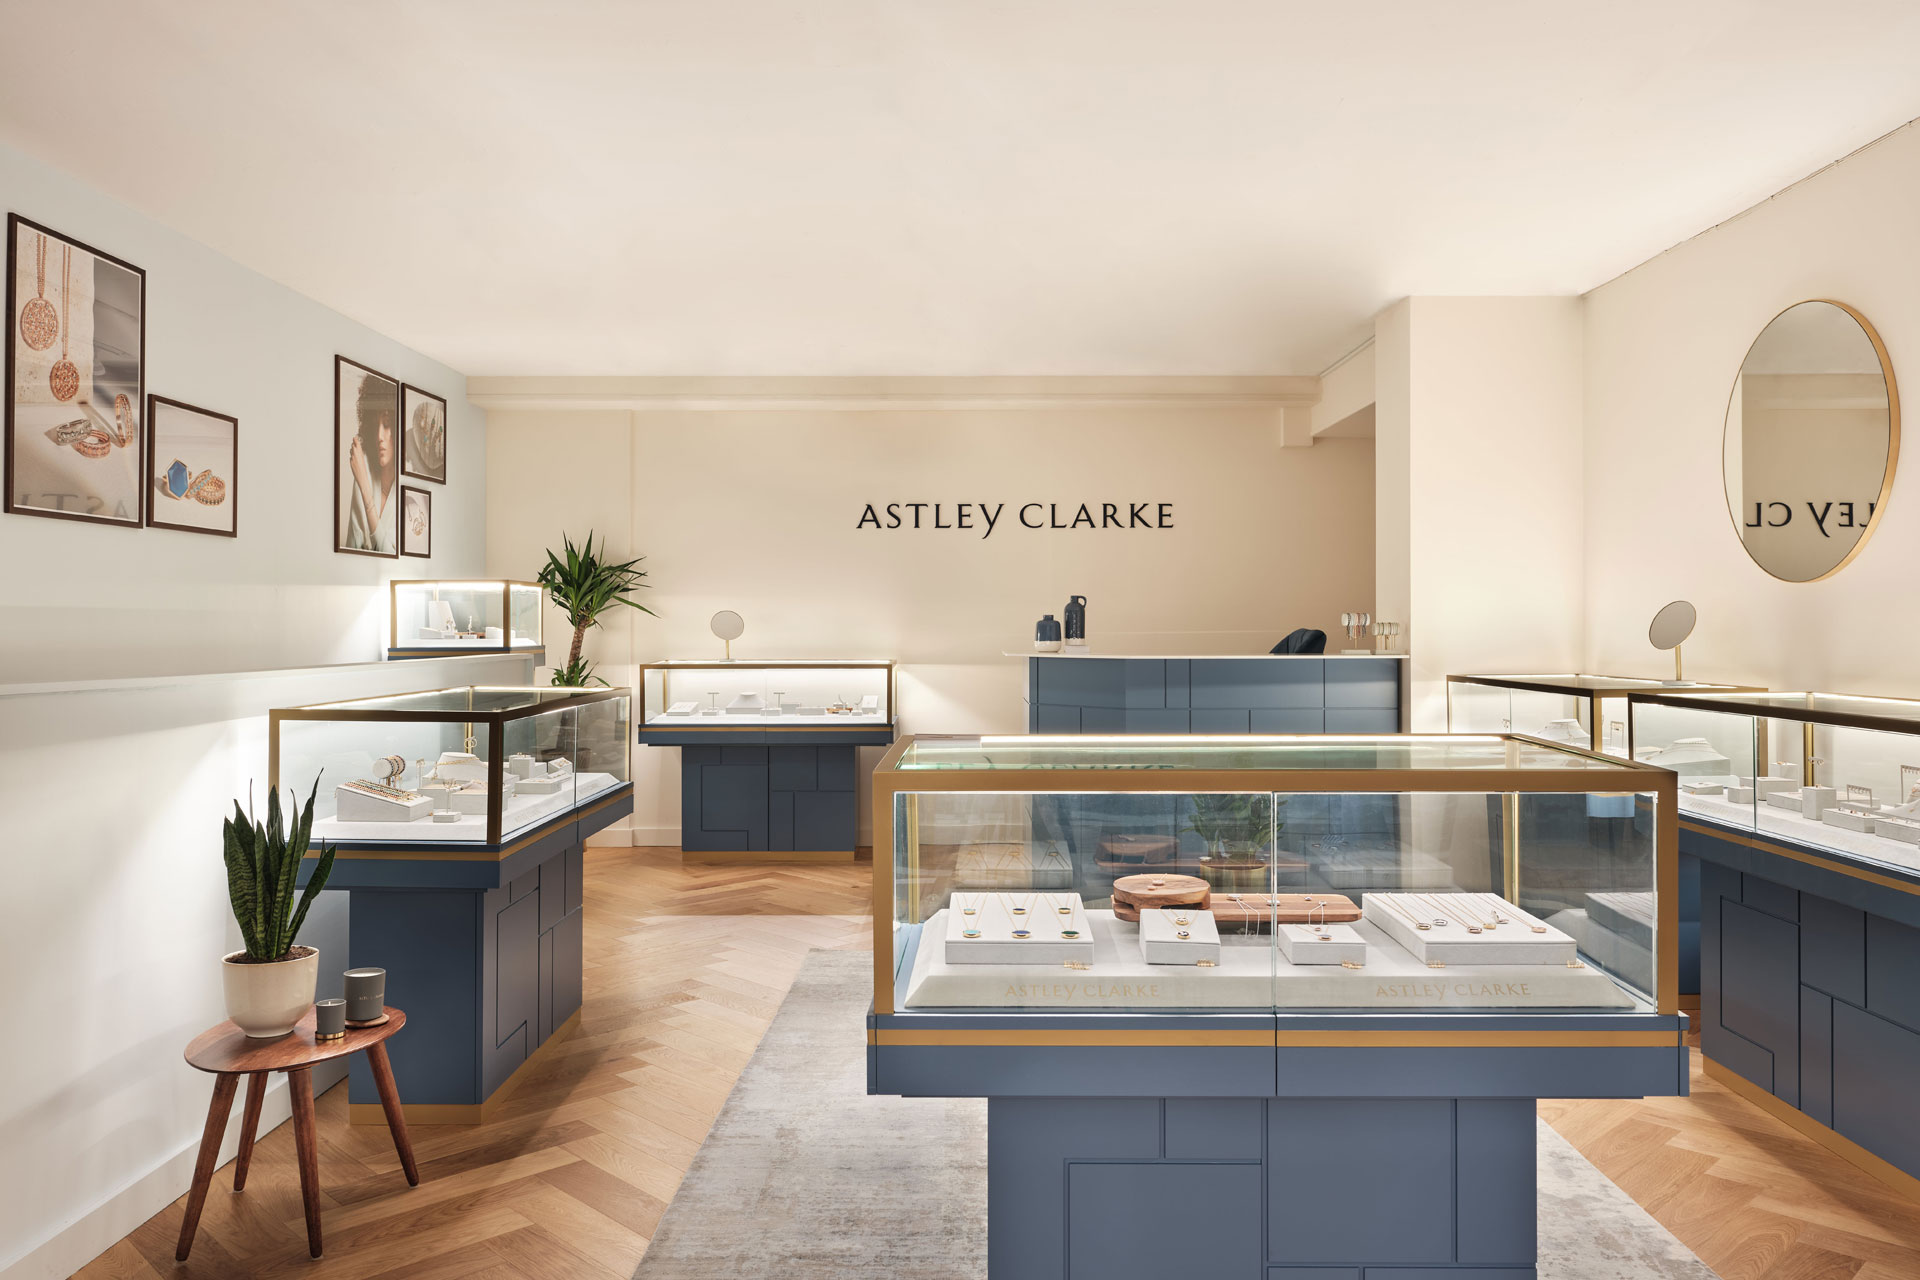 Astley Clarke british luxury news